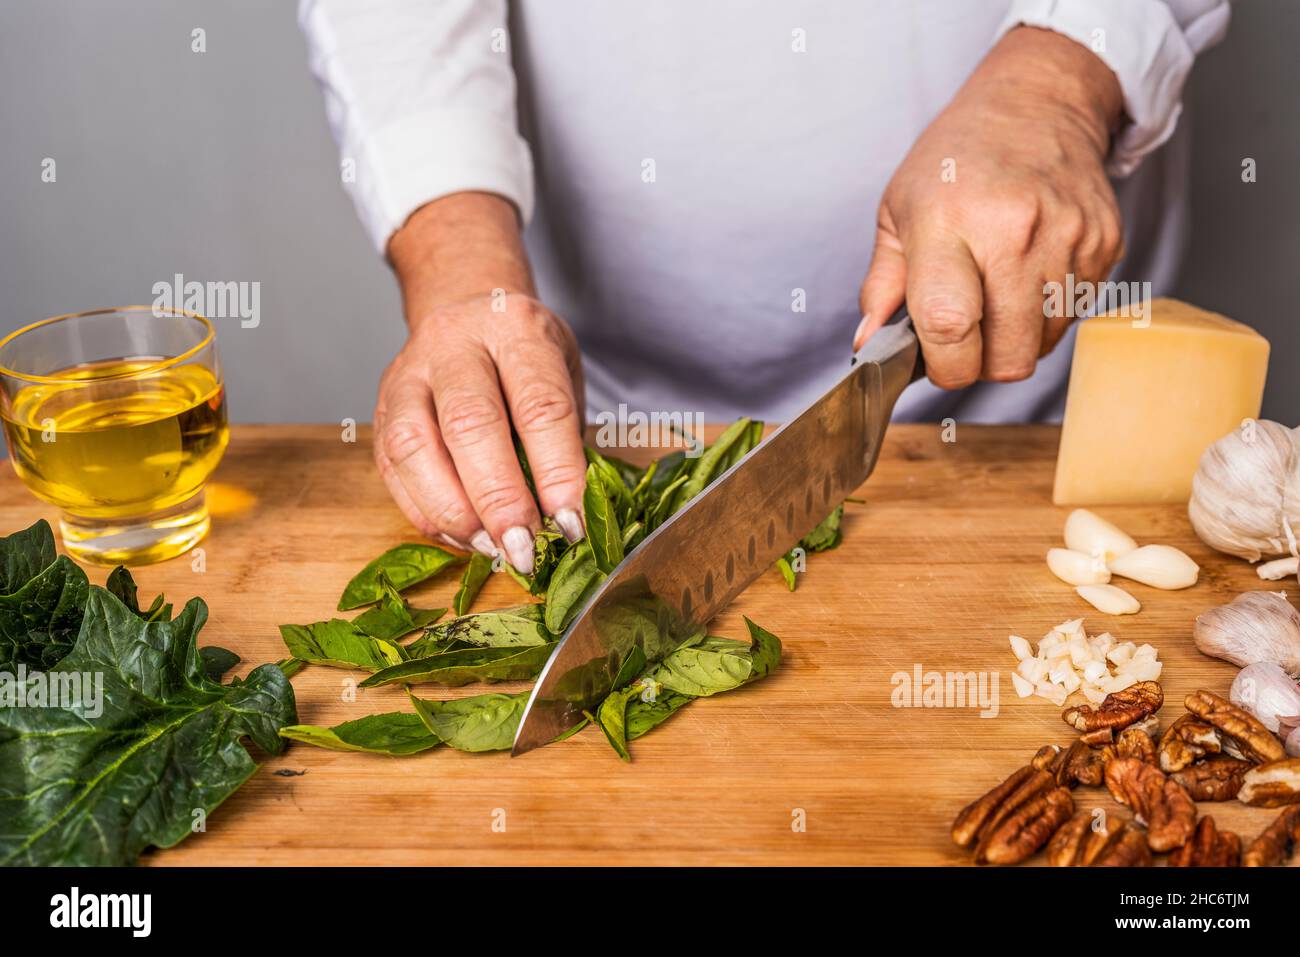 Vue rognée d'une femme adulte méconnue qui hache du basilic avec un couteau de cuisine sur une table en bois pour la préparation d'une sauce au pesto. Banque D'Images